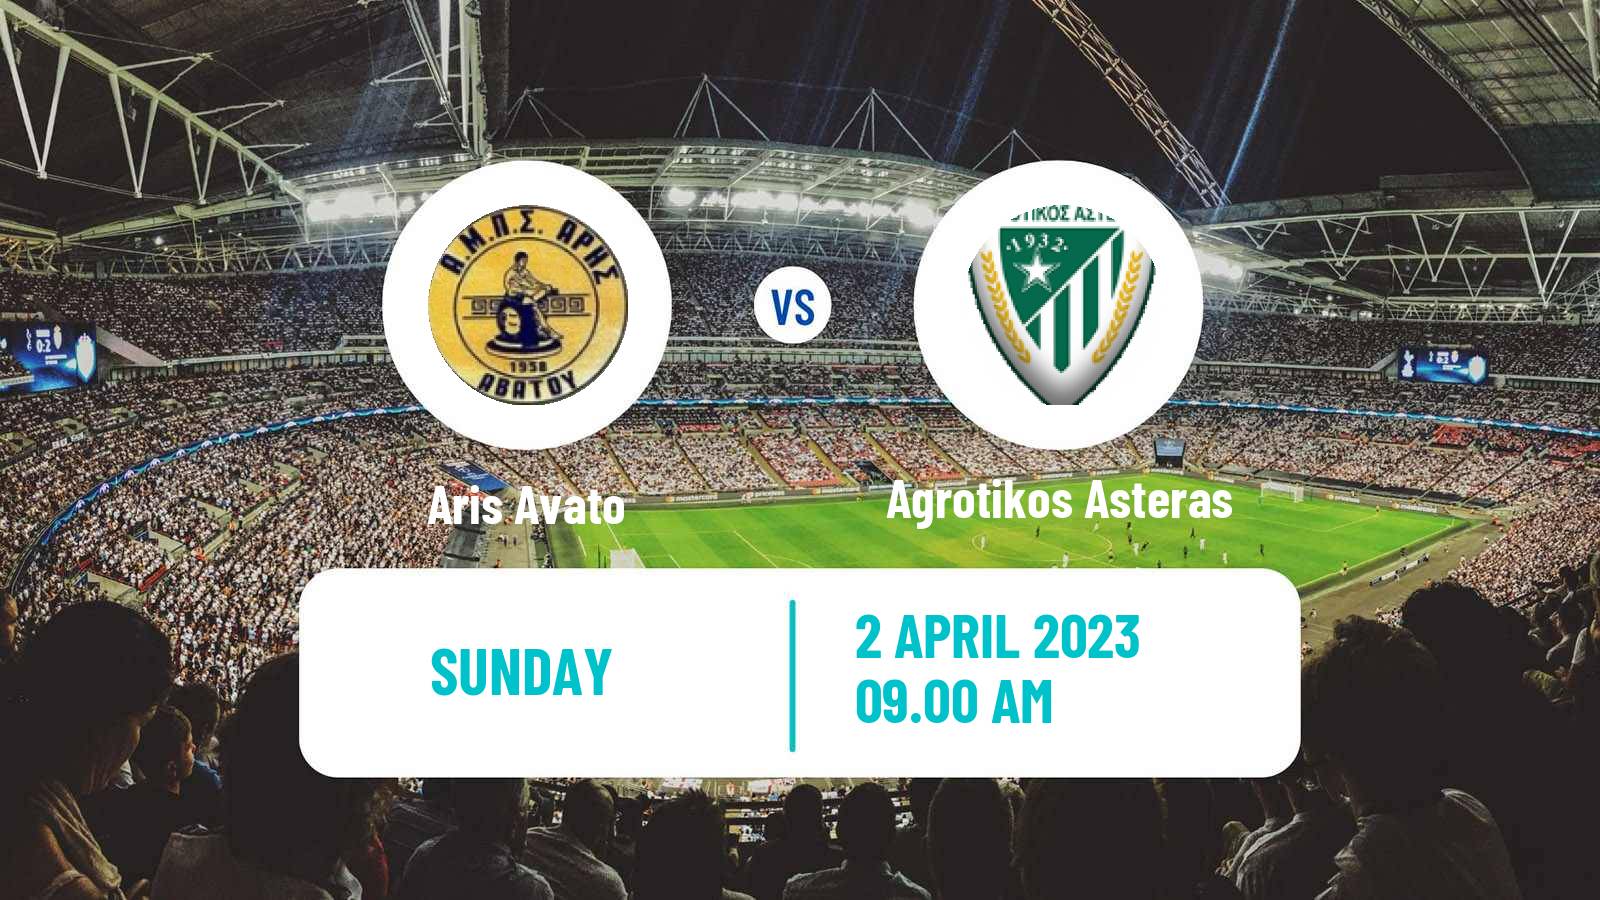 Soccer Greek Gamma Ethniki - Group 1 Aris Avato - Agrotikos Asteras